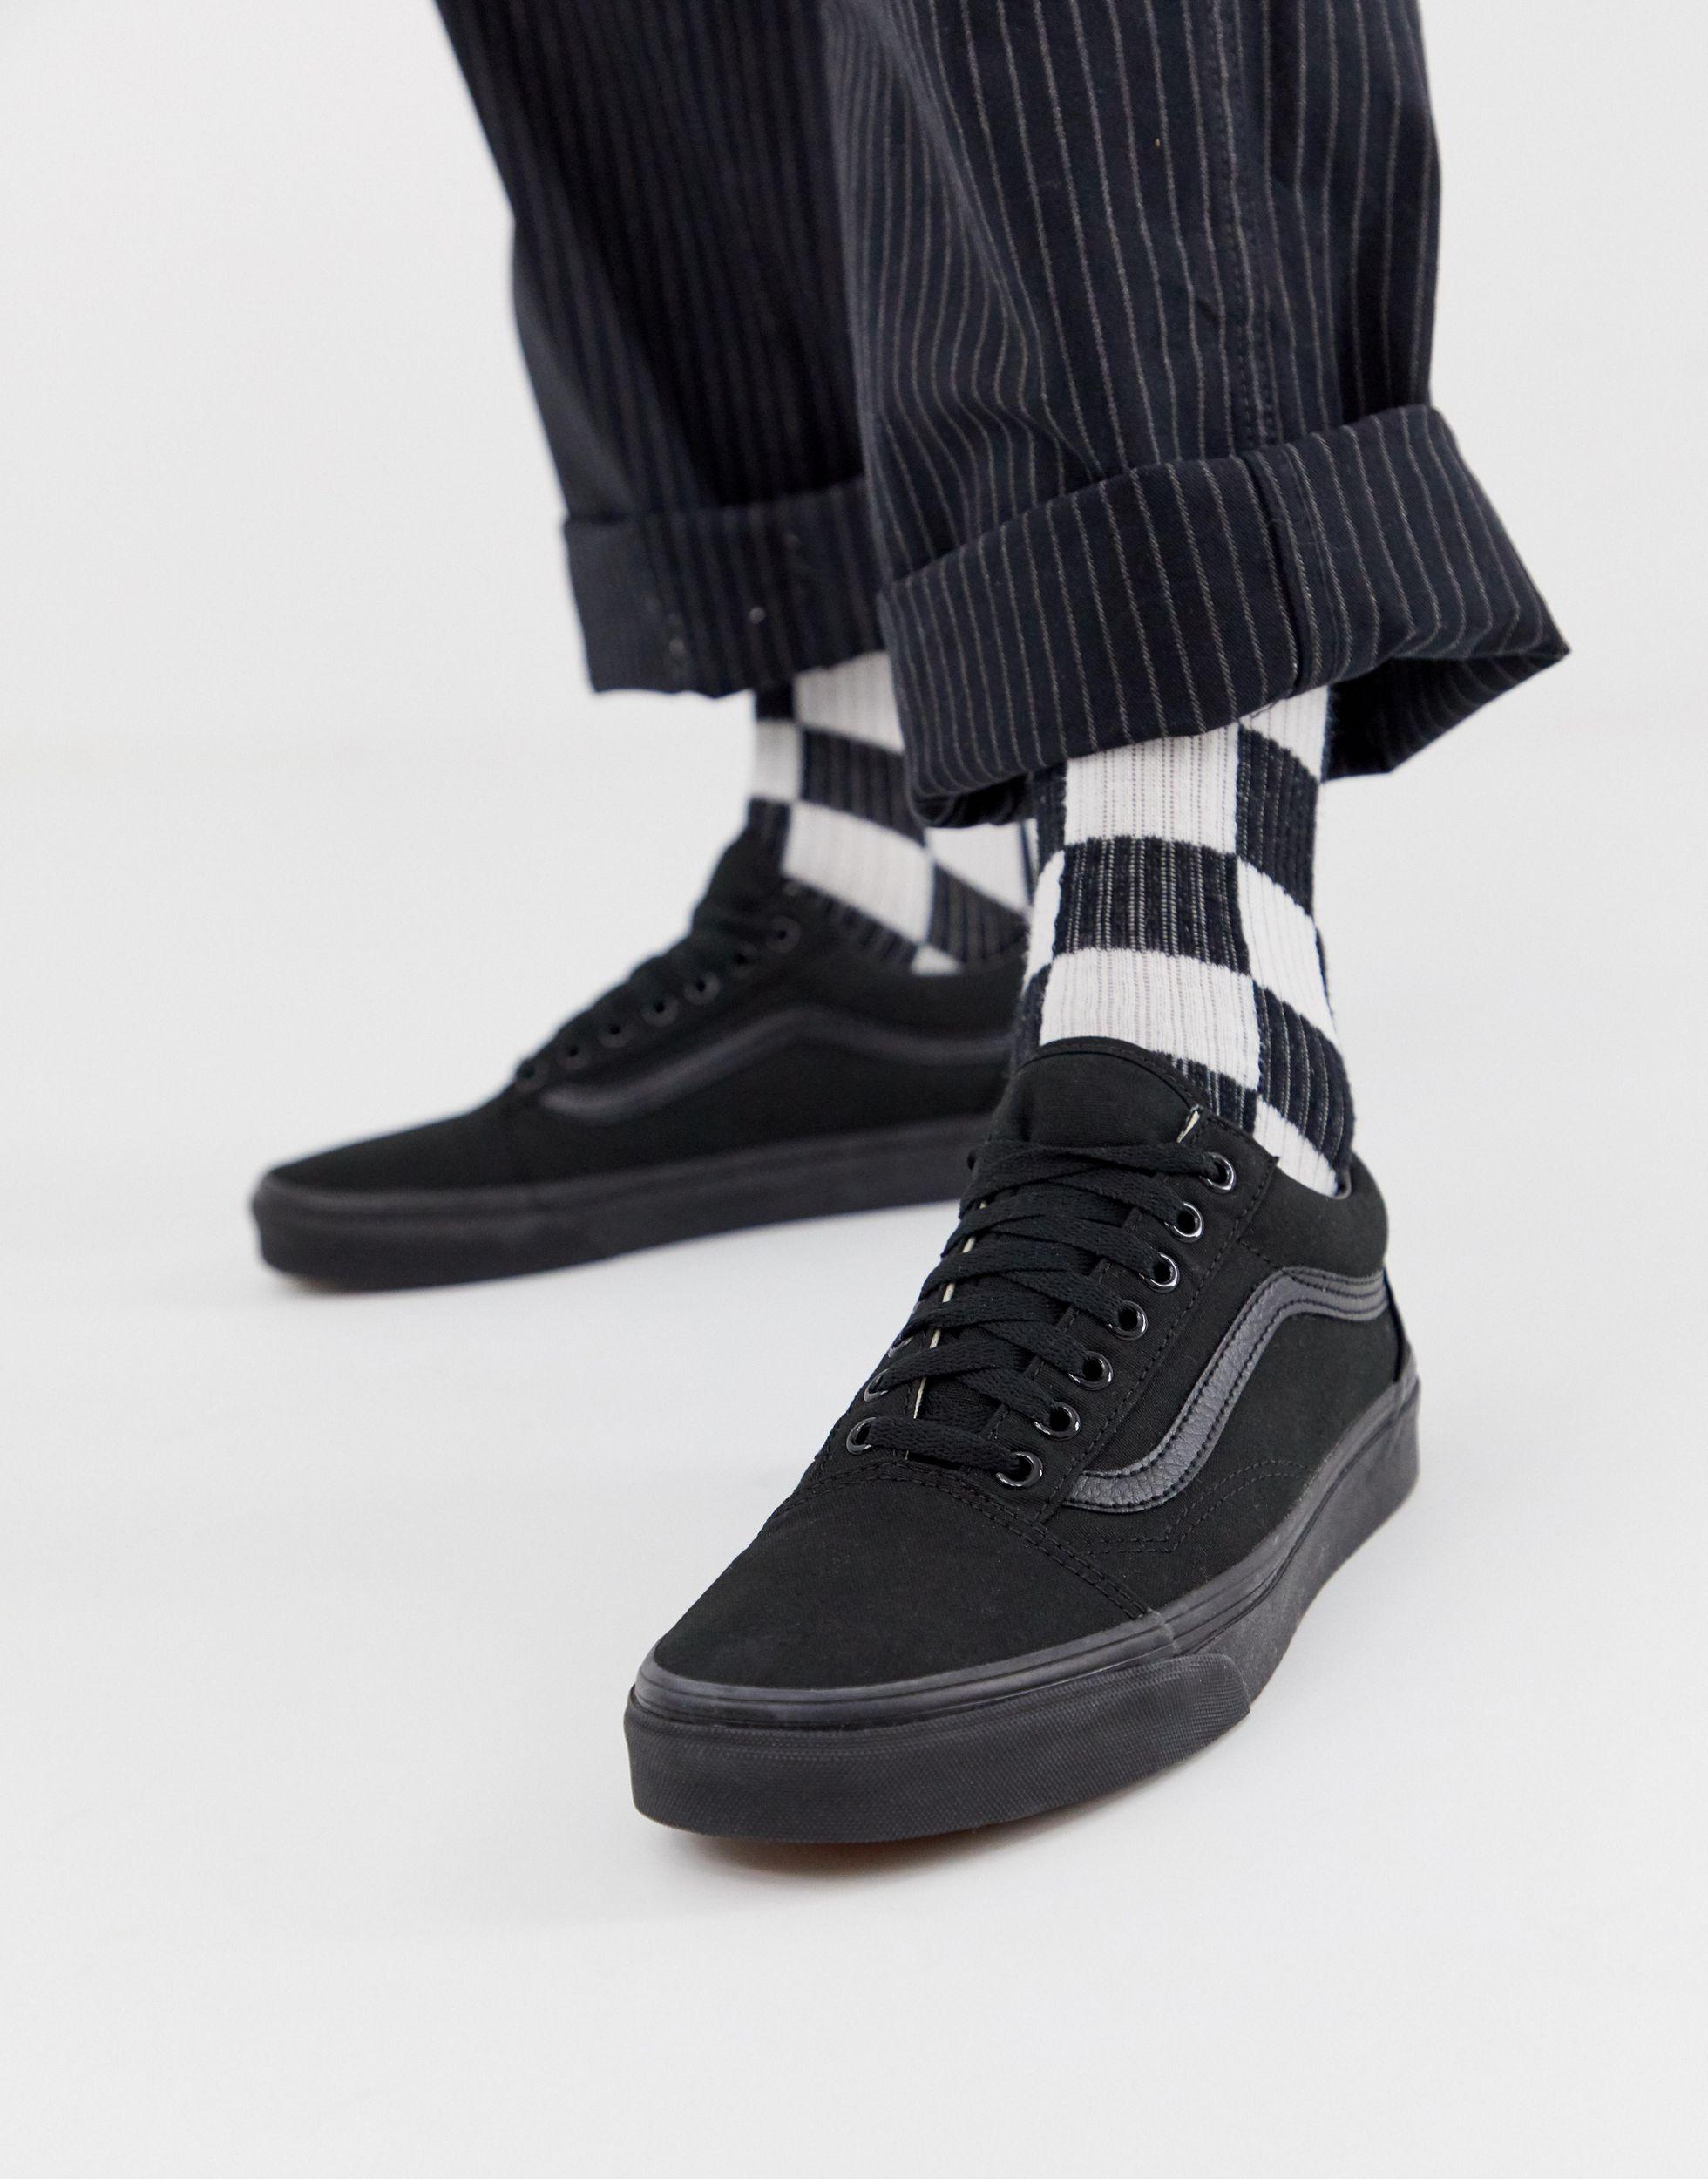 Vans Canvas Old Skool Sneakers in Black for Men - Save 26% | Lyst